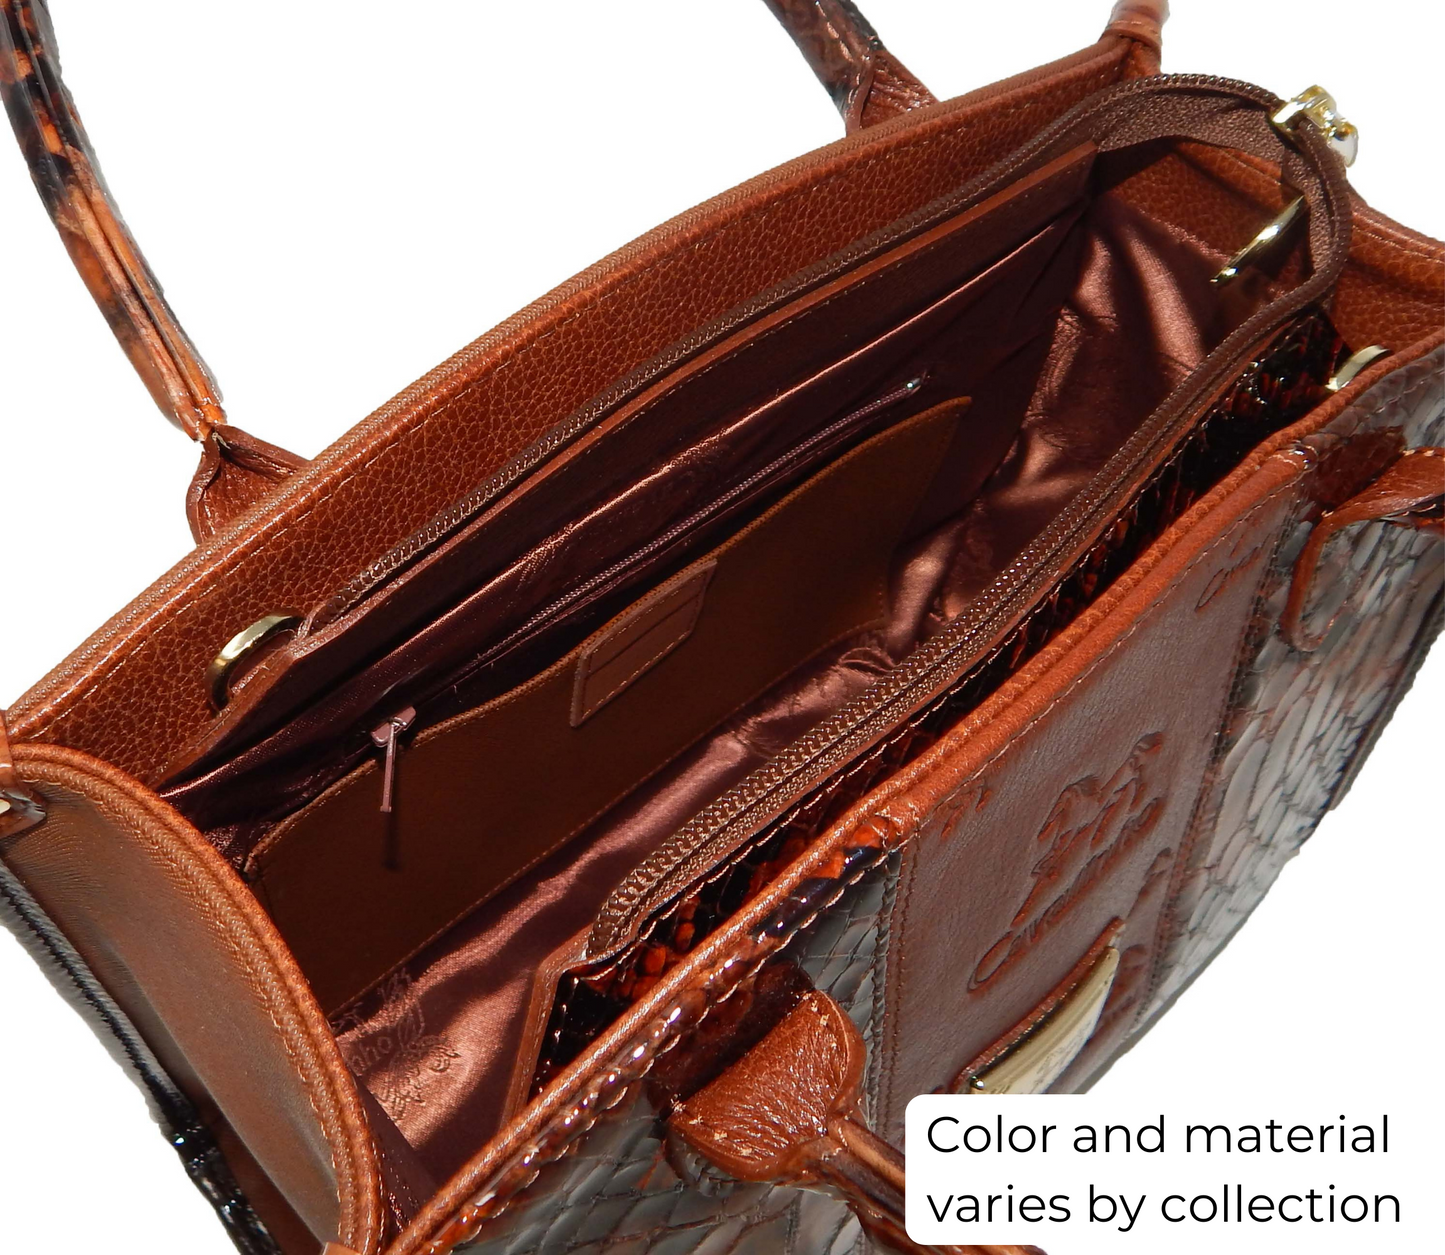 #color_ Black and White | Cavalinho Royal Handbag - Black and White - inside_0480_ca11a8f0-8e3f-4599-832c-c9d5cea77de8